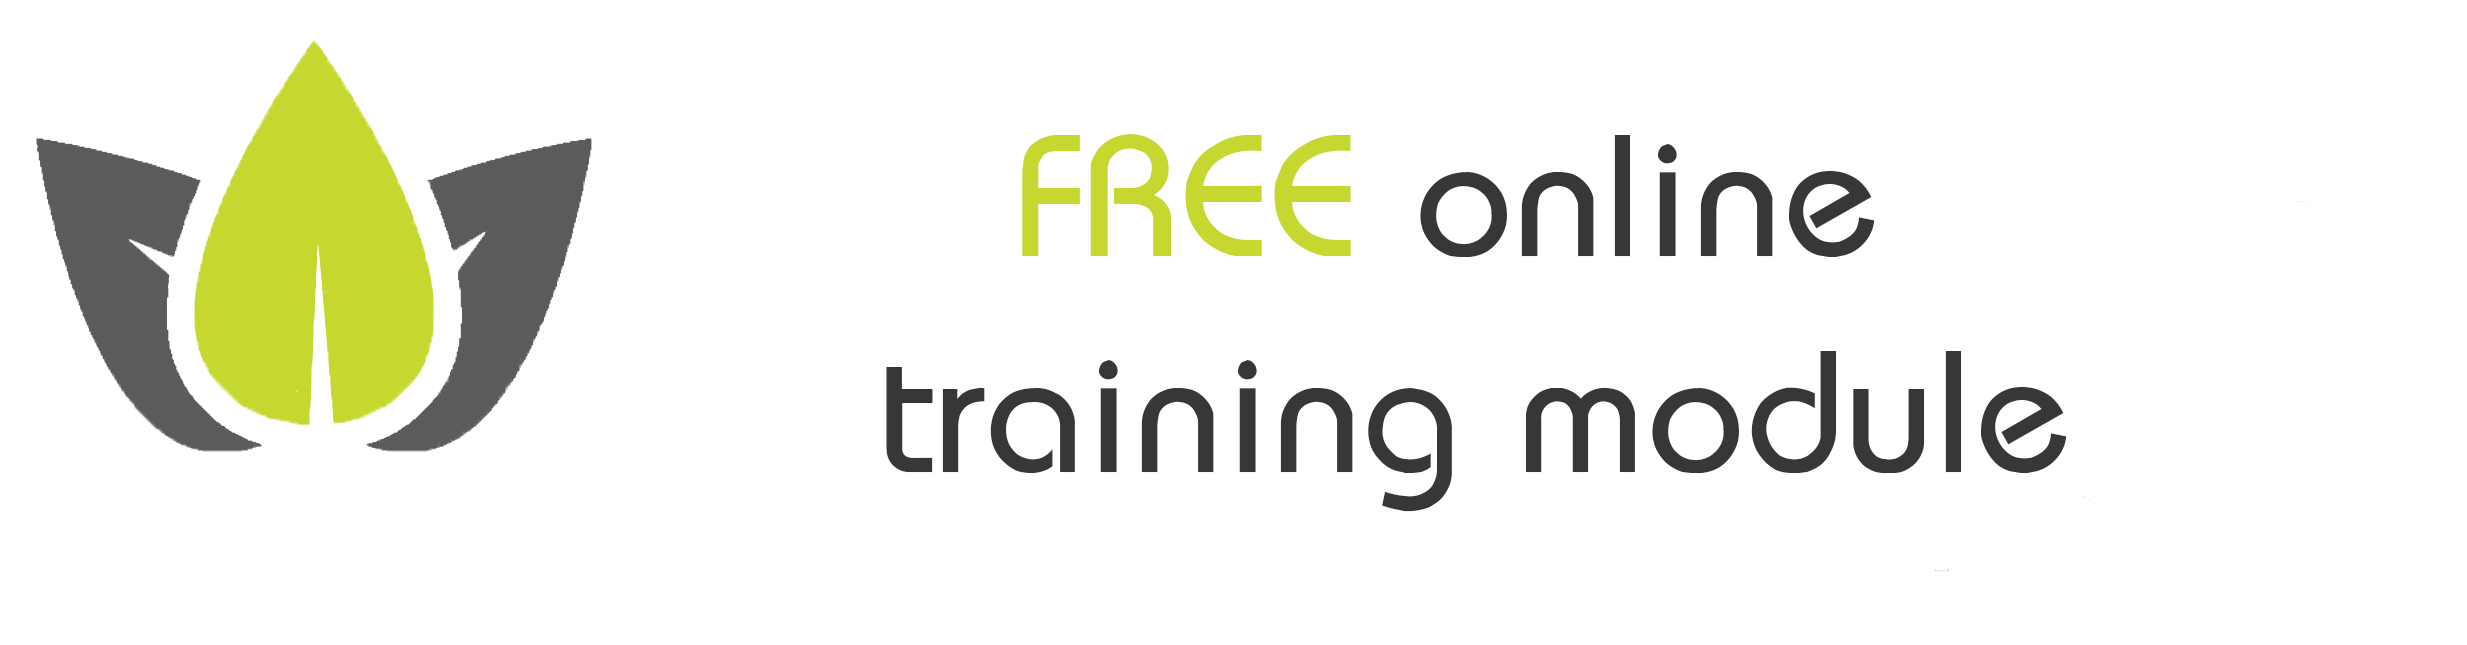 Havana Free Online Training Module